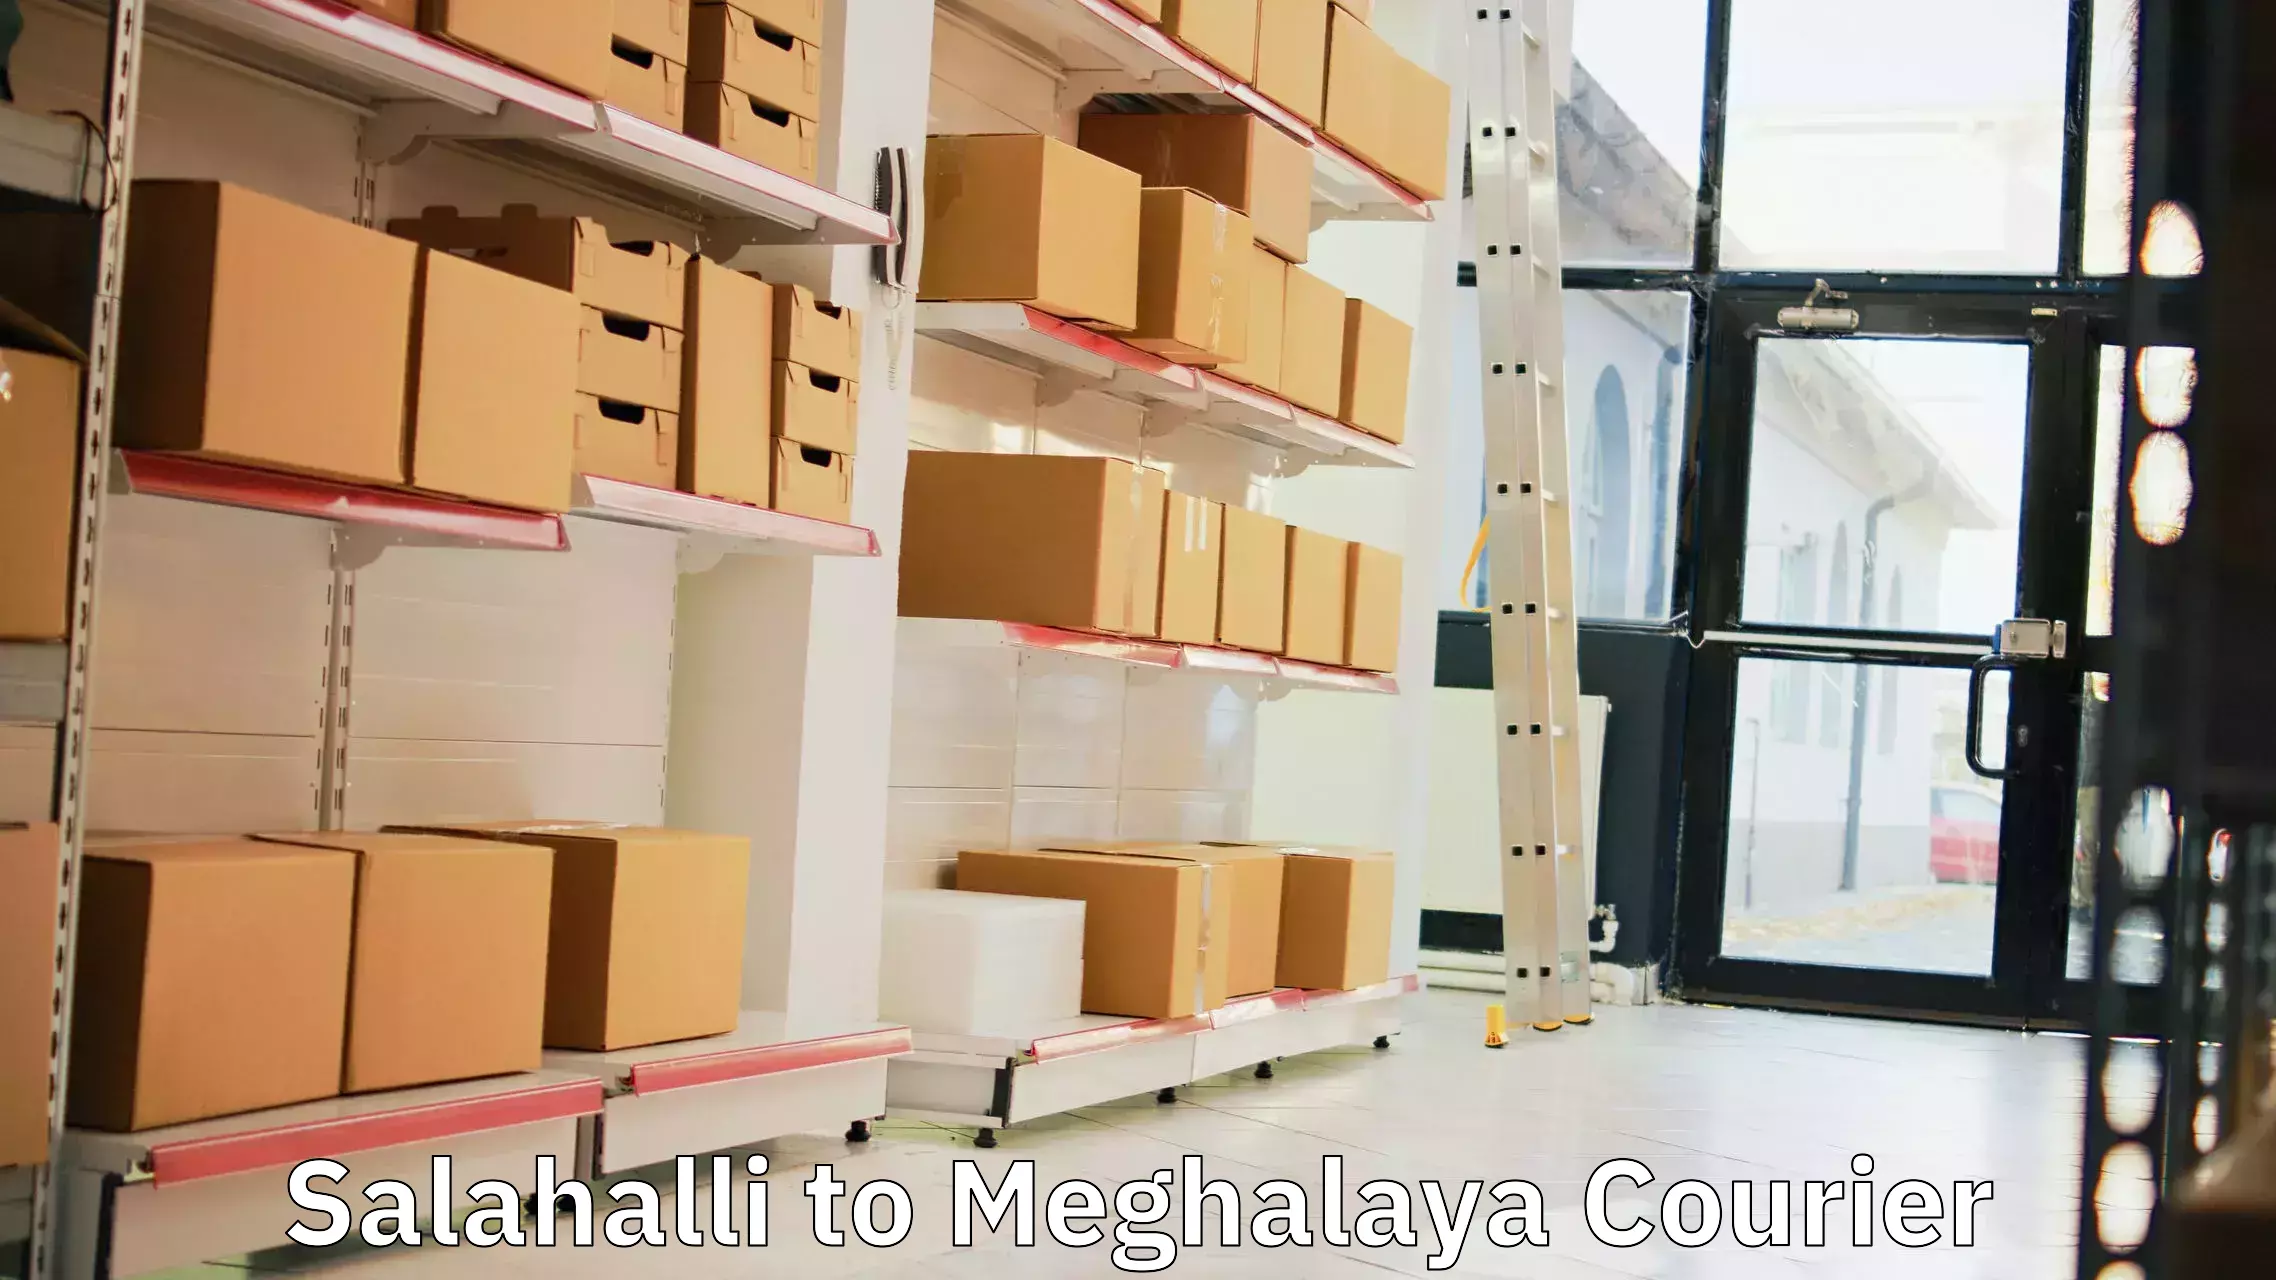 Efficient logistics management Salahalli to Shillong